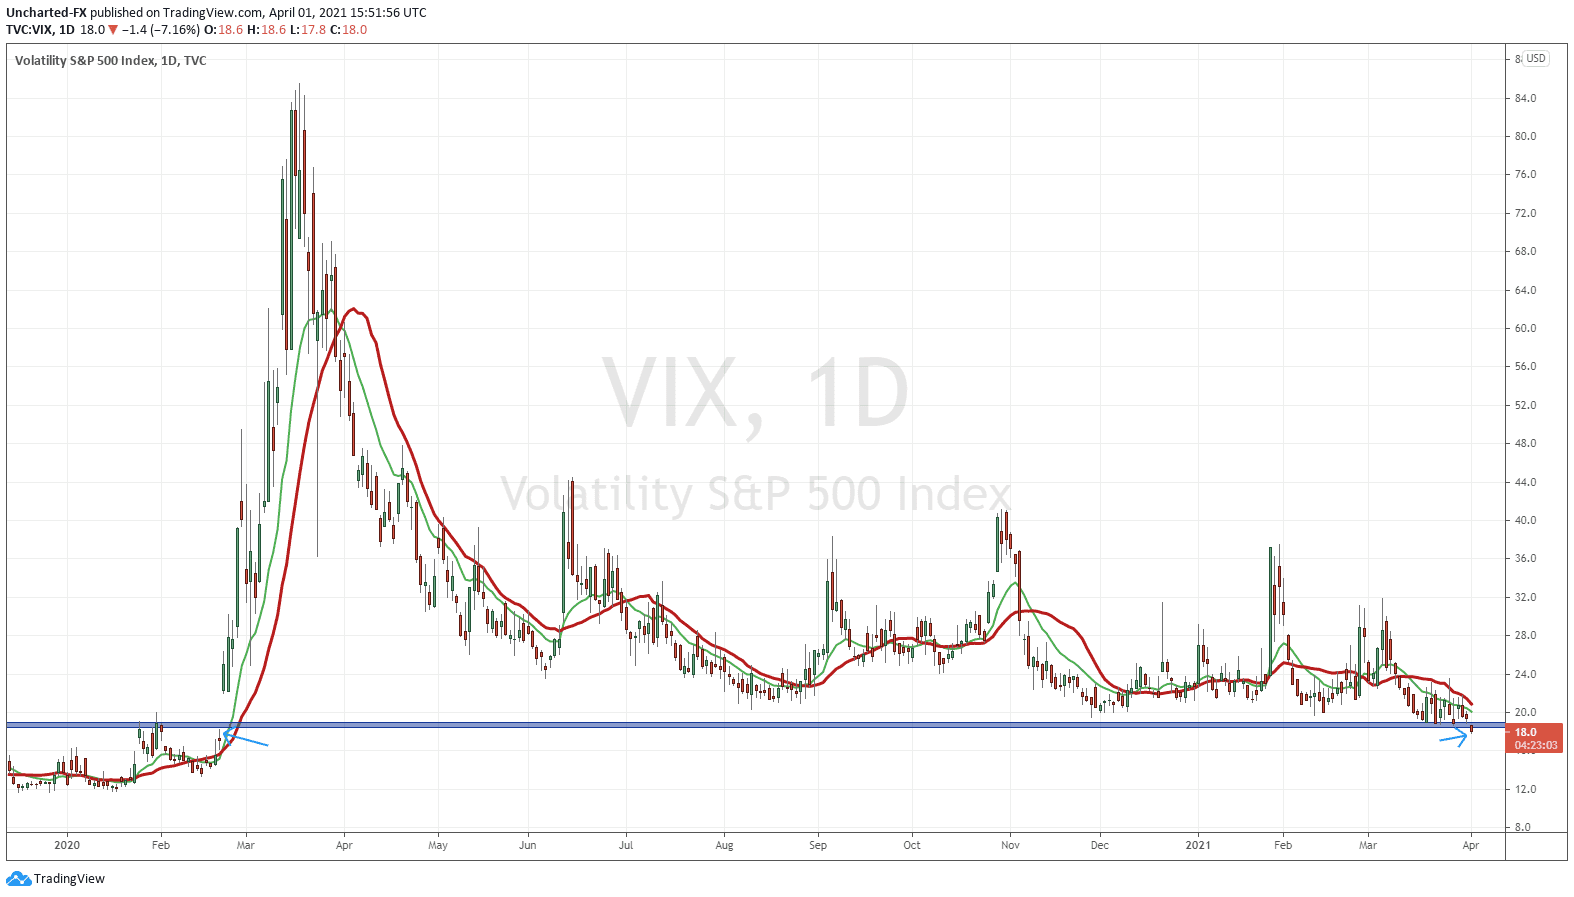 The VIX